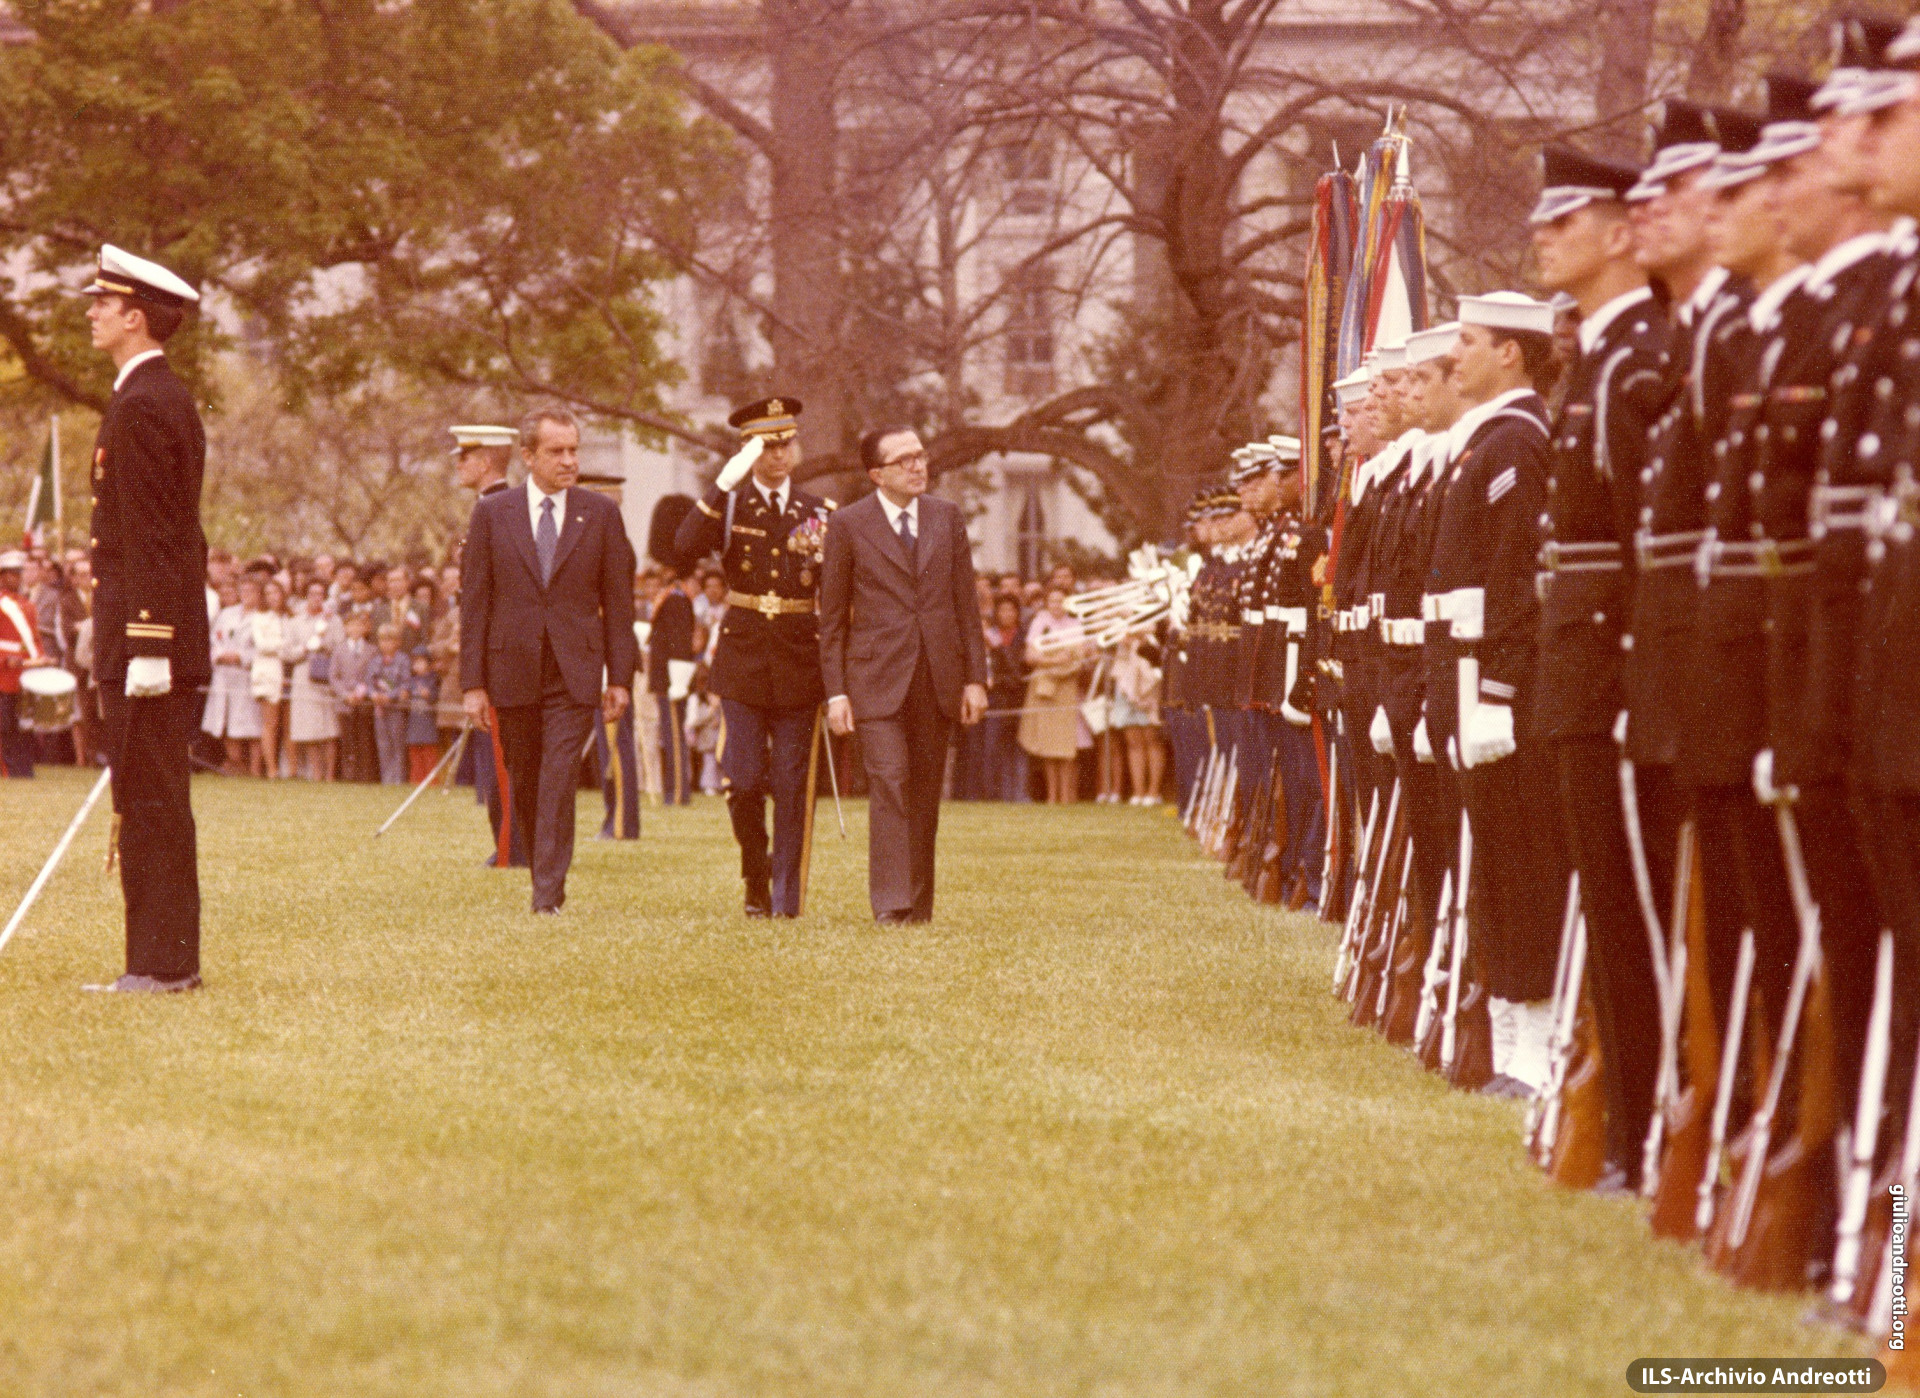 Visita di Andreotti in USA nell'aprile 1973. Cerimonia con Nixon alla Casa Bianca.